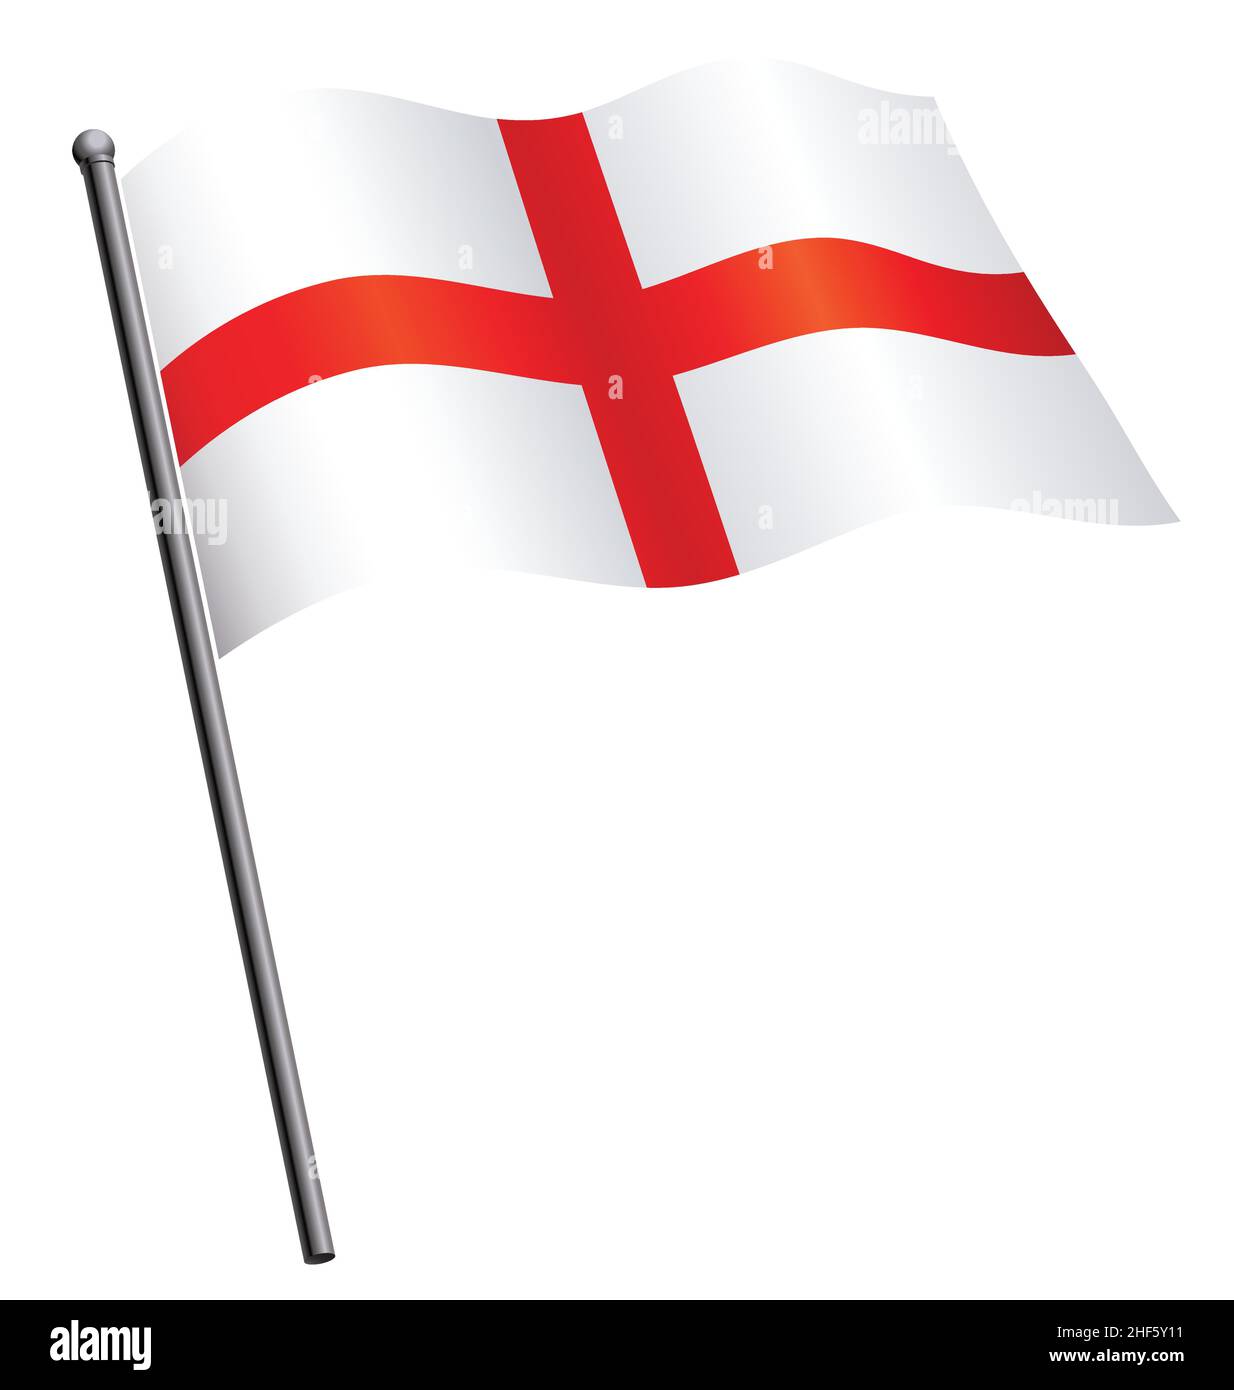 Fliegende winkende englische Flagge von england st georges Kreuz auf Fahnenmast Vektor isoliert auf weißem Hintergrund Stock Vektor